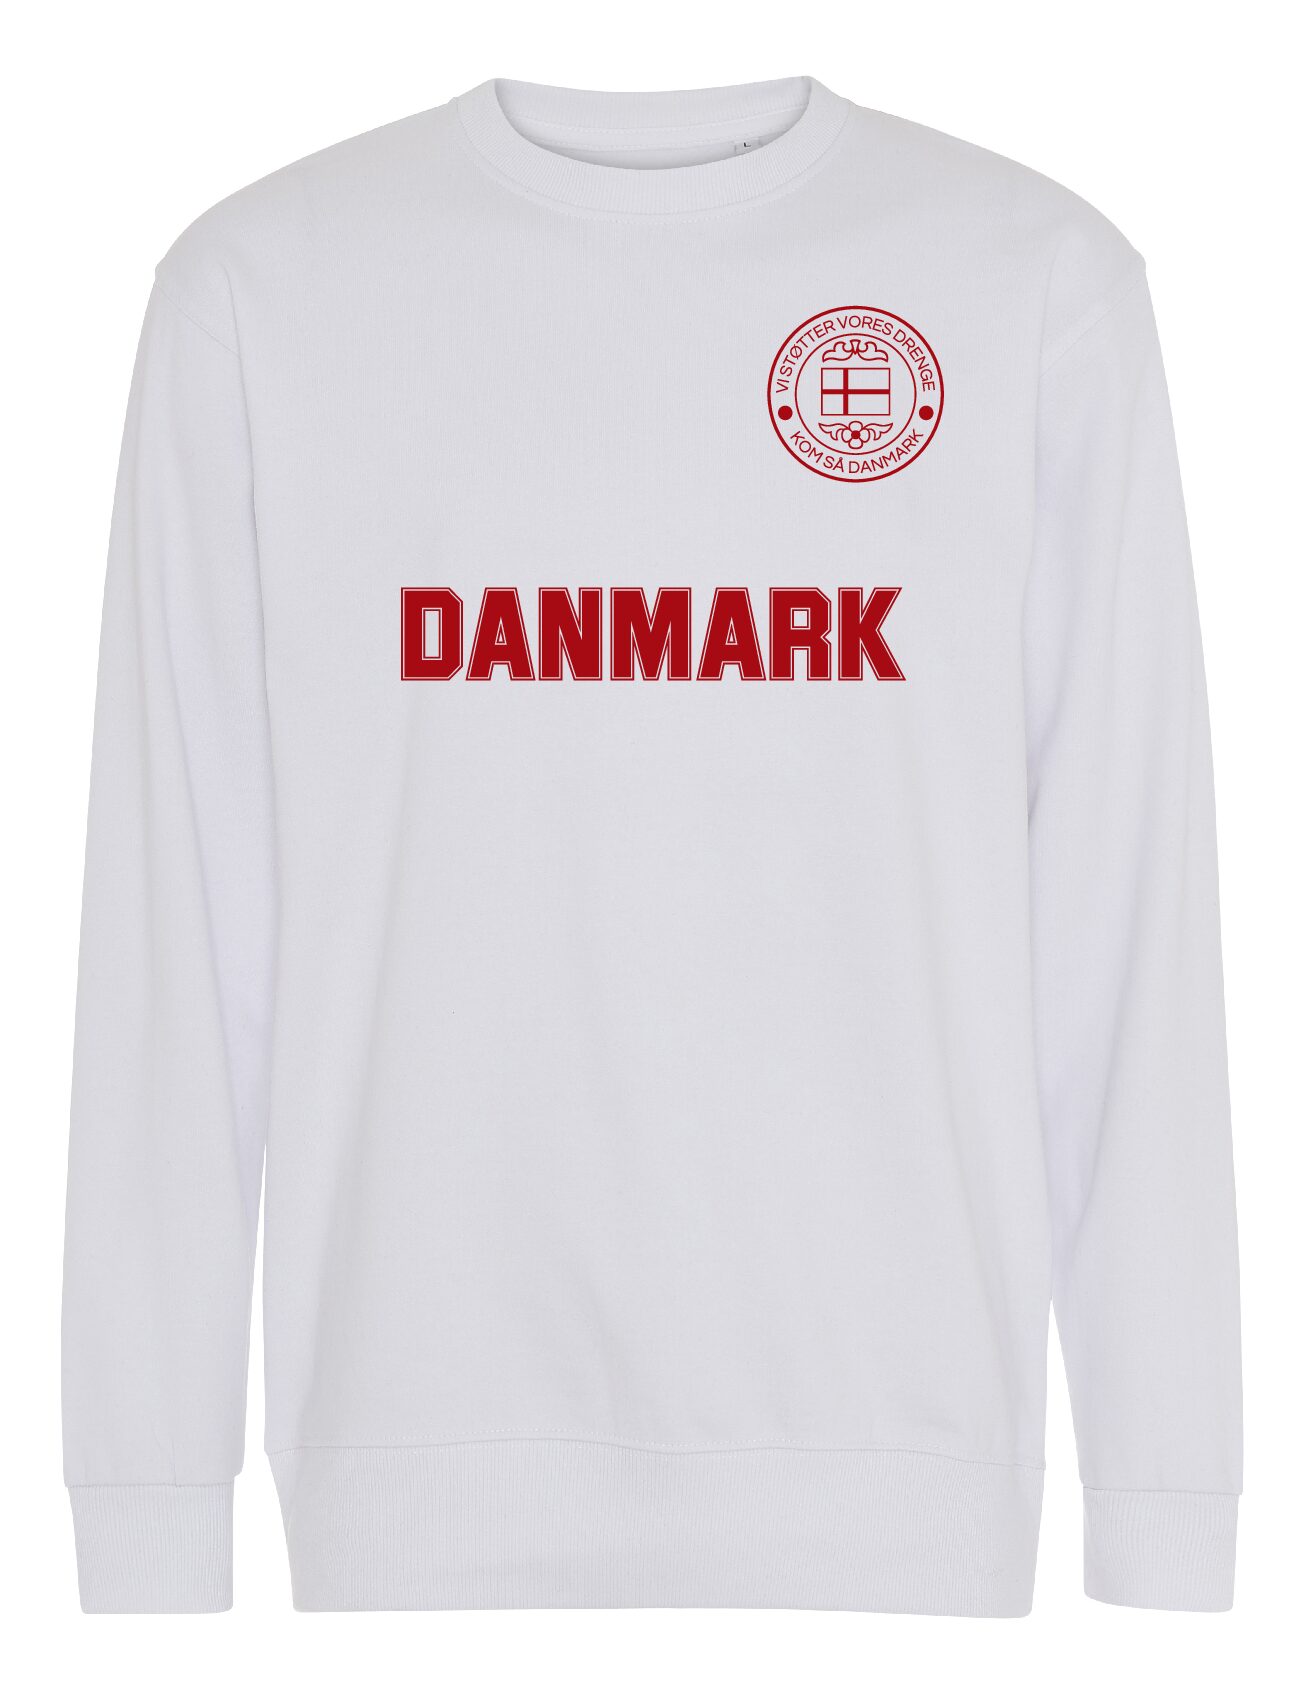 Sweatshirt hvid Danmark 1 1 pdf